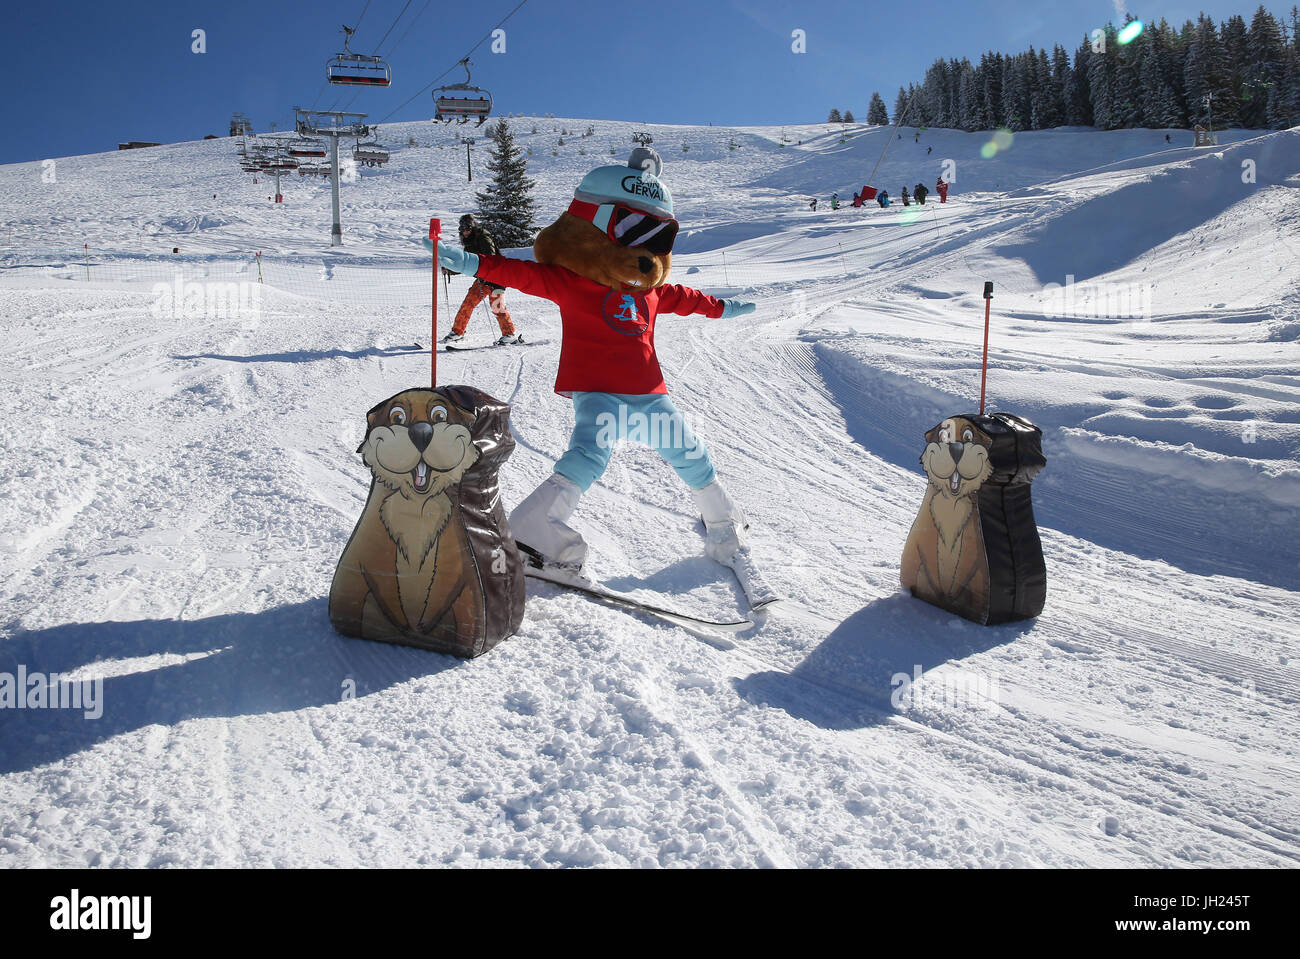 Alpes françaises. Charlotte la marmotte : mascot de Saint-Gervais Mont-Blanc. La France. Banque D'Images